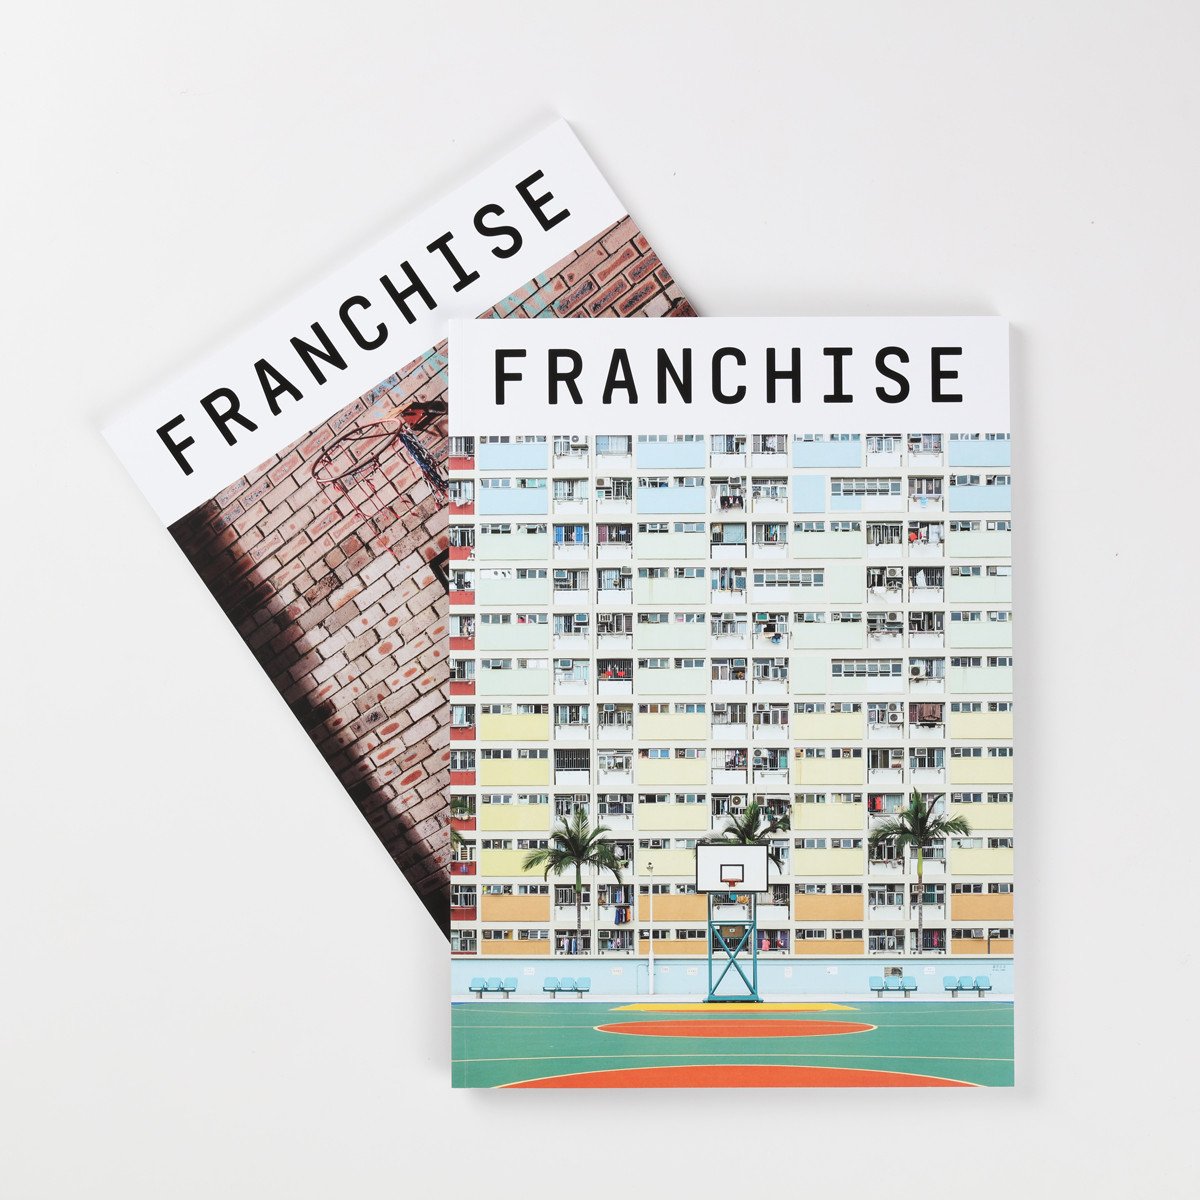 Franchise Magazine Issue 01